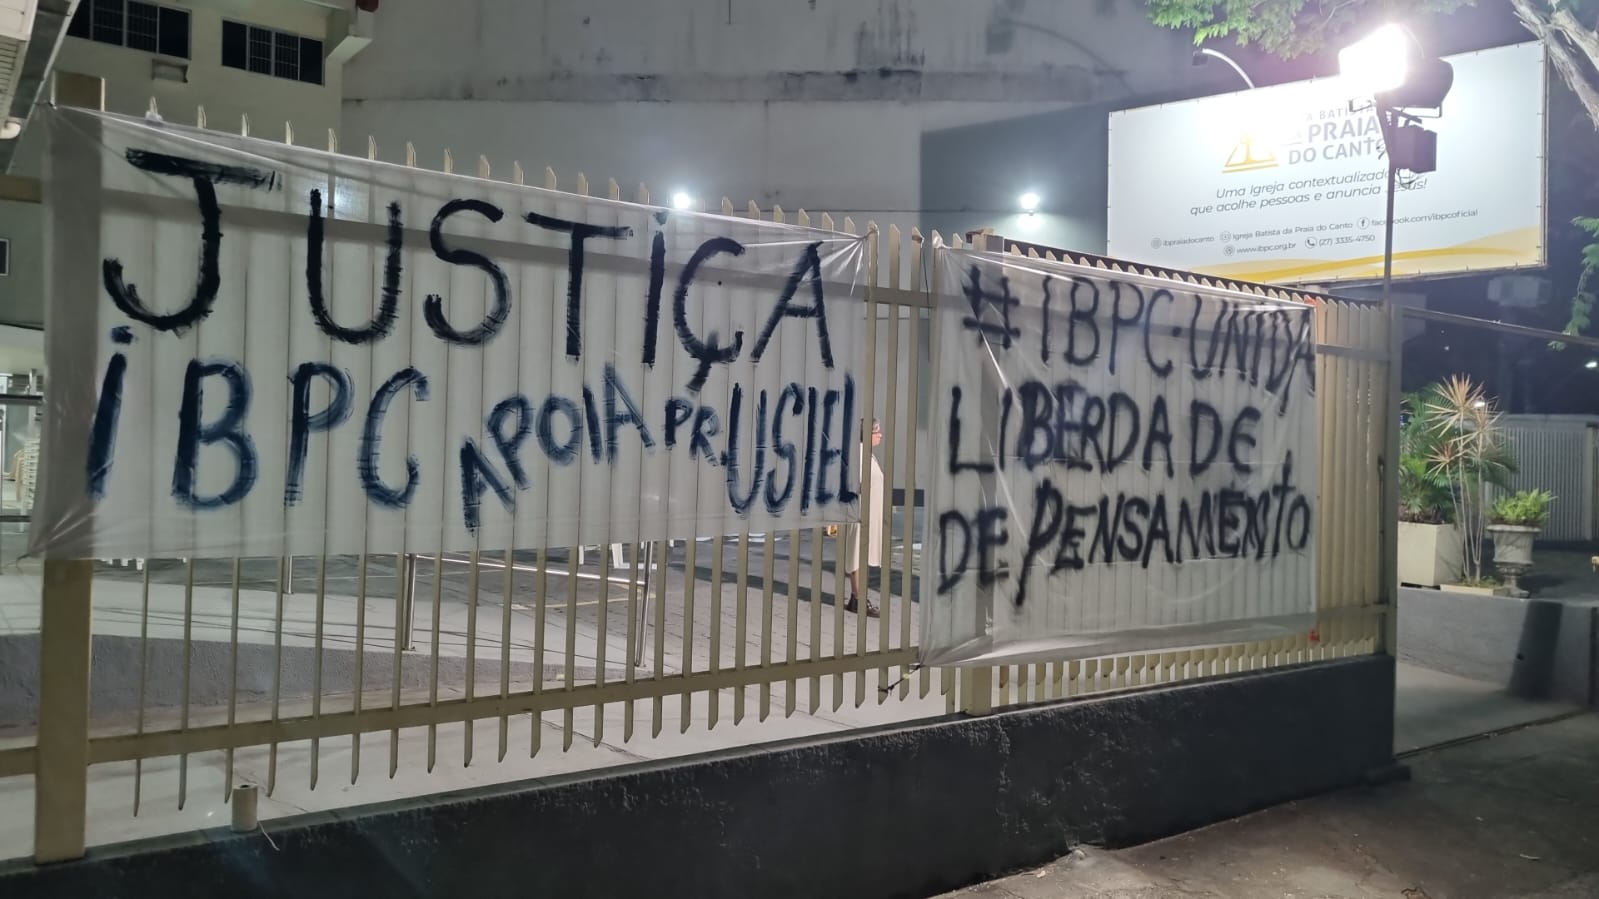 Conselho da Igreja Batista da Praia do Canto divulgou nota em apoio ao pastor Usiel Carneiro, retirado do comando por decisão judicial; fiéis protestaram nas proximidades do templo